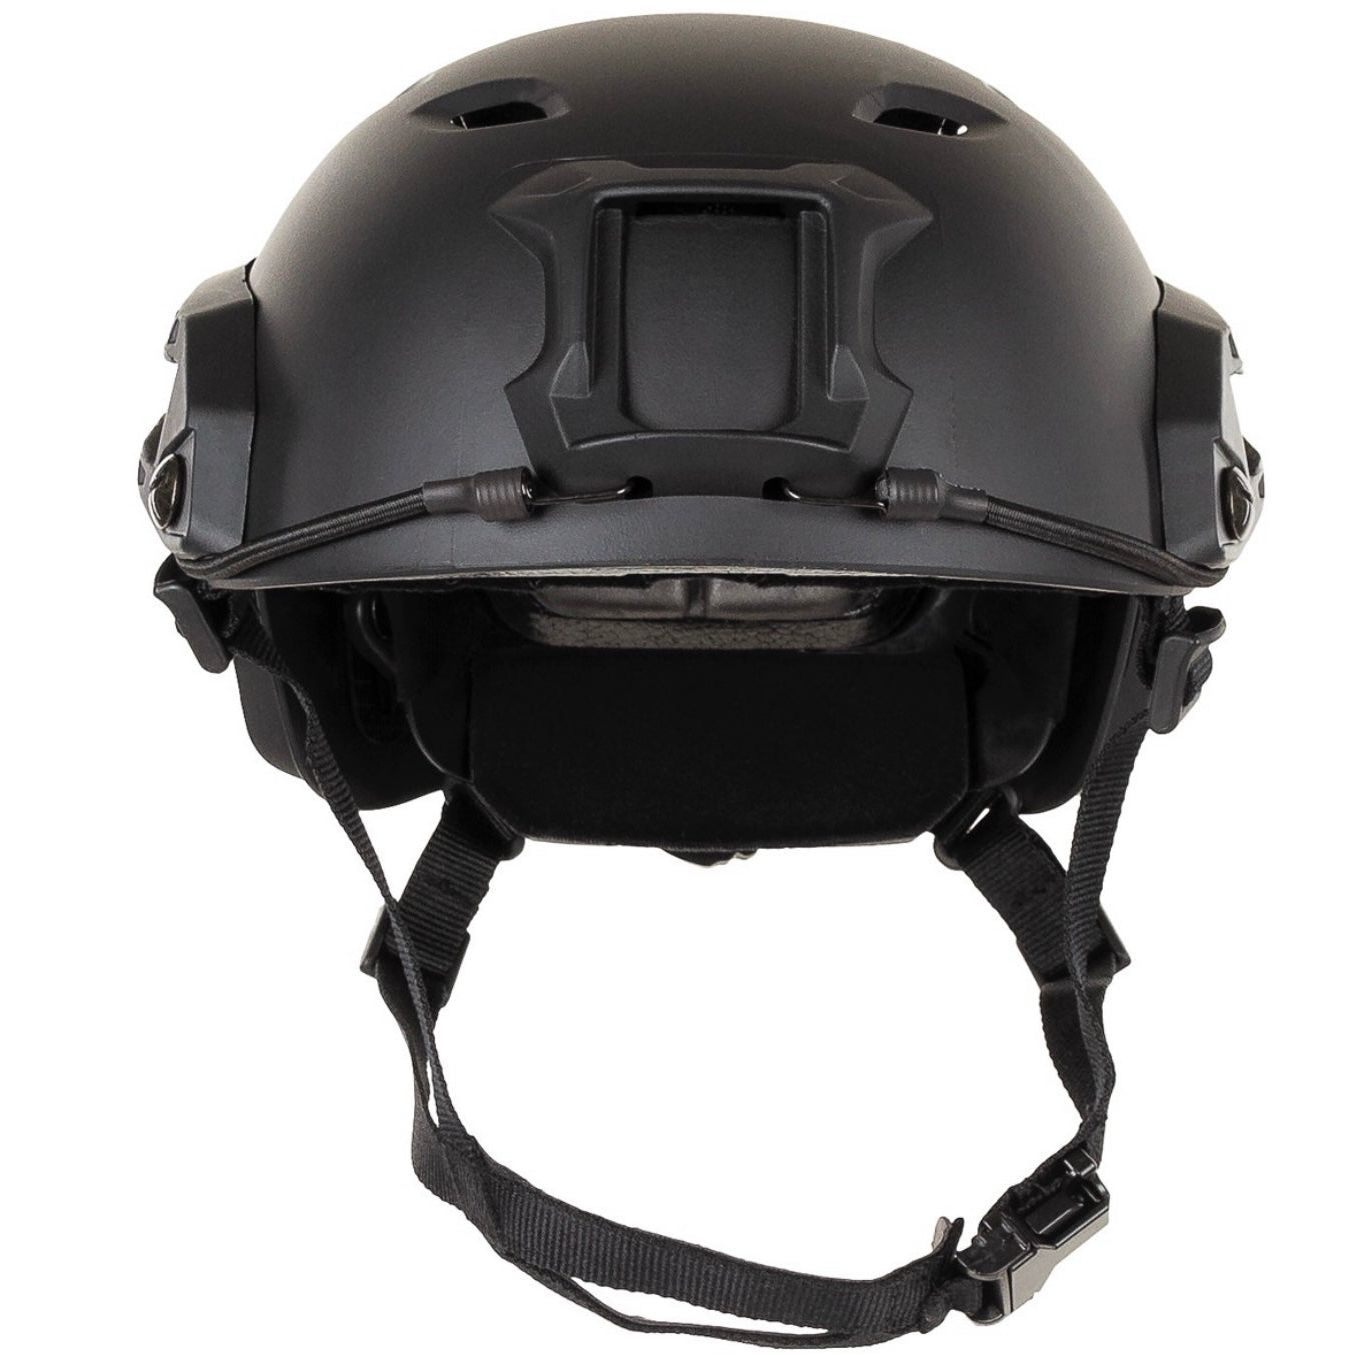 CEST® FAST helmet ABS plastic